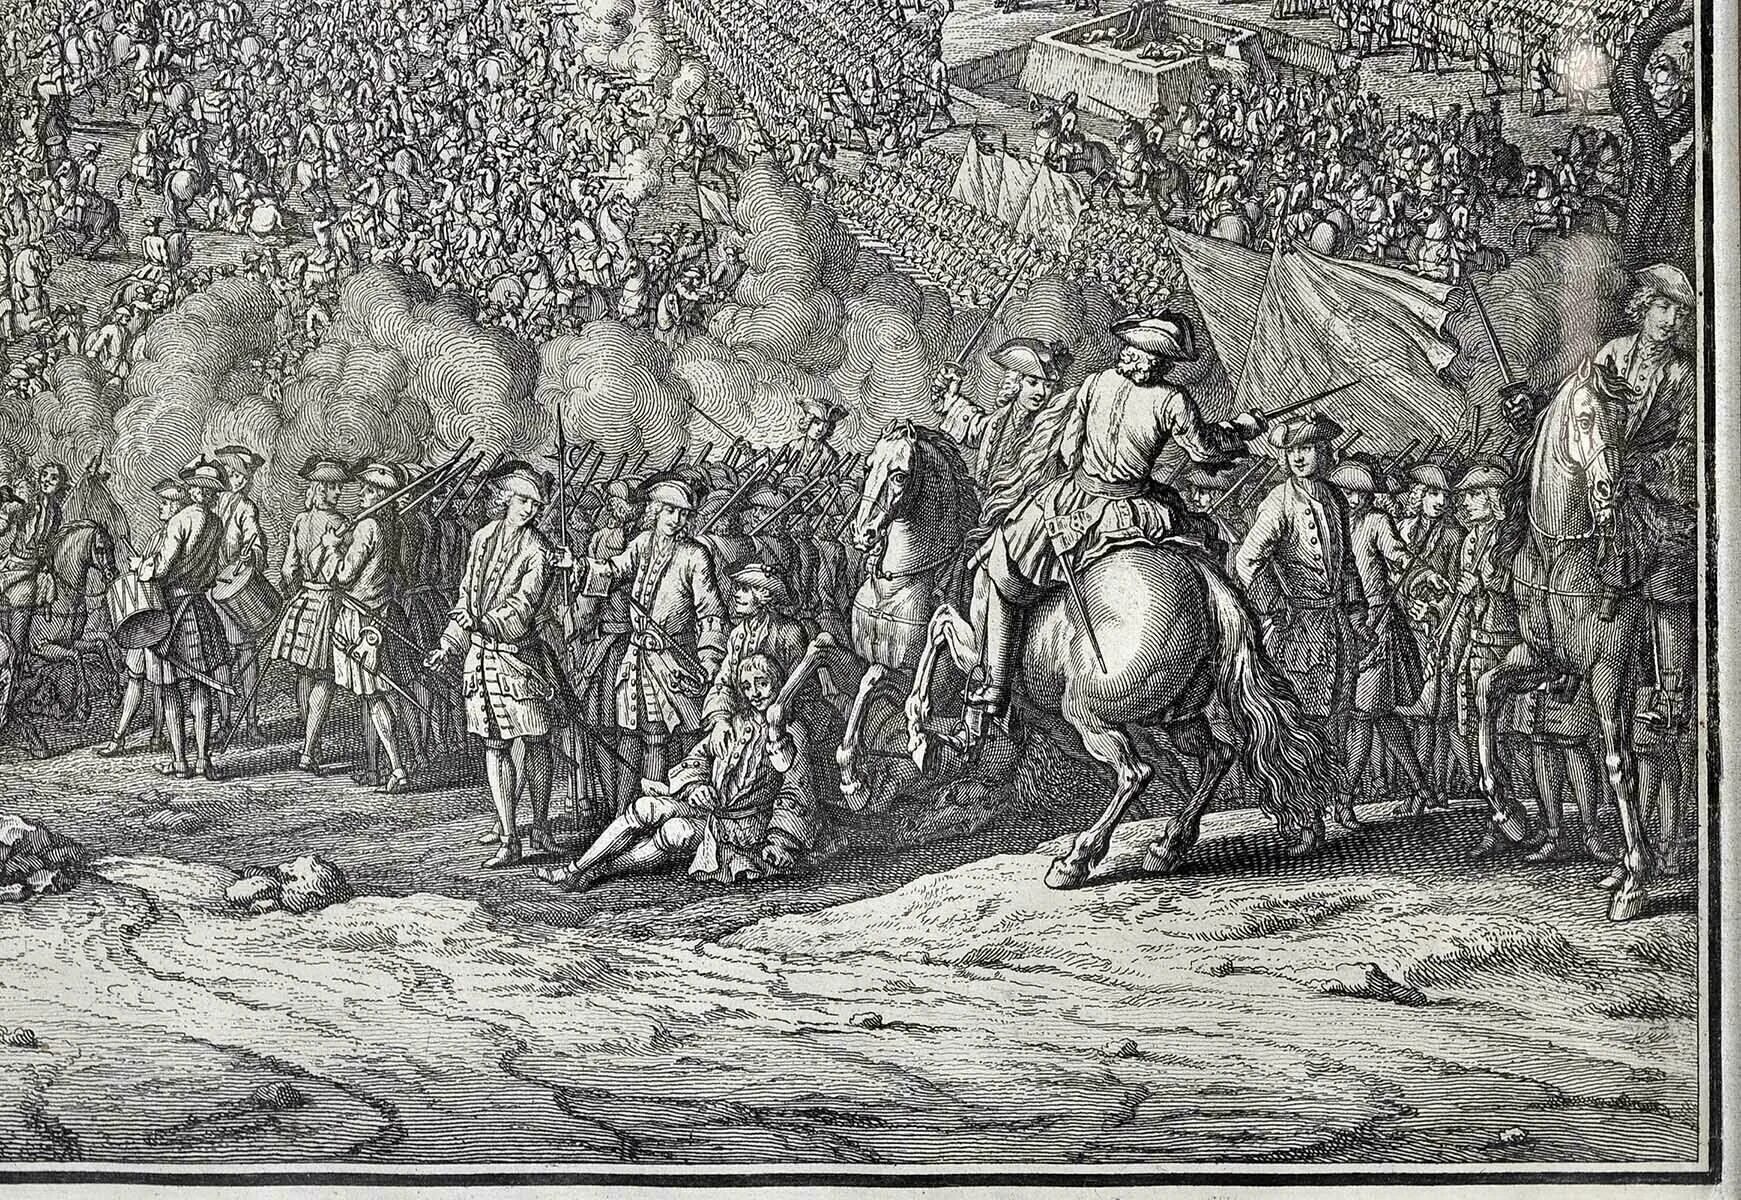 Пьер Дени Мартен младший (1663-1742) «Полтавская баталия» (1726 г.). Полтавская битва» Пьер-Дени Мартен. Полтавская битва 27 июня 1709 г привела